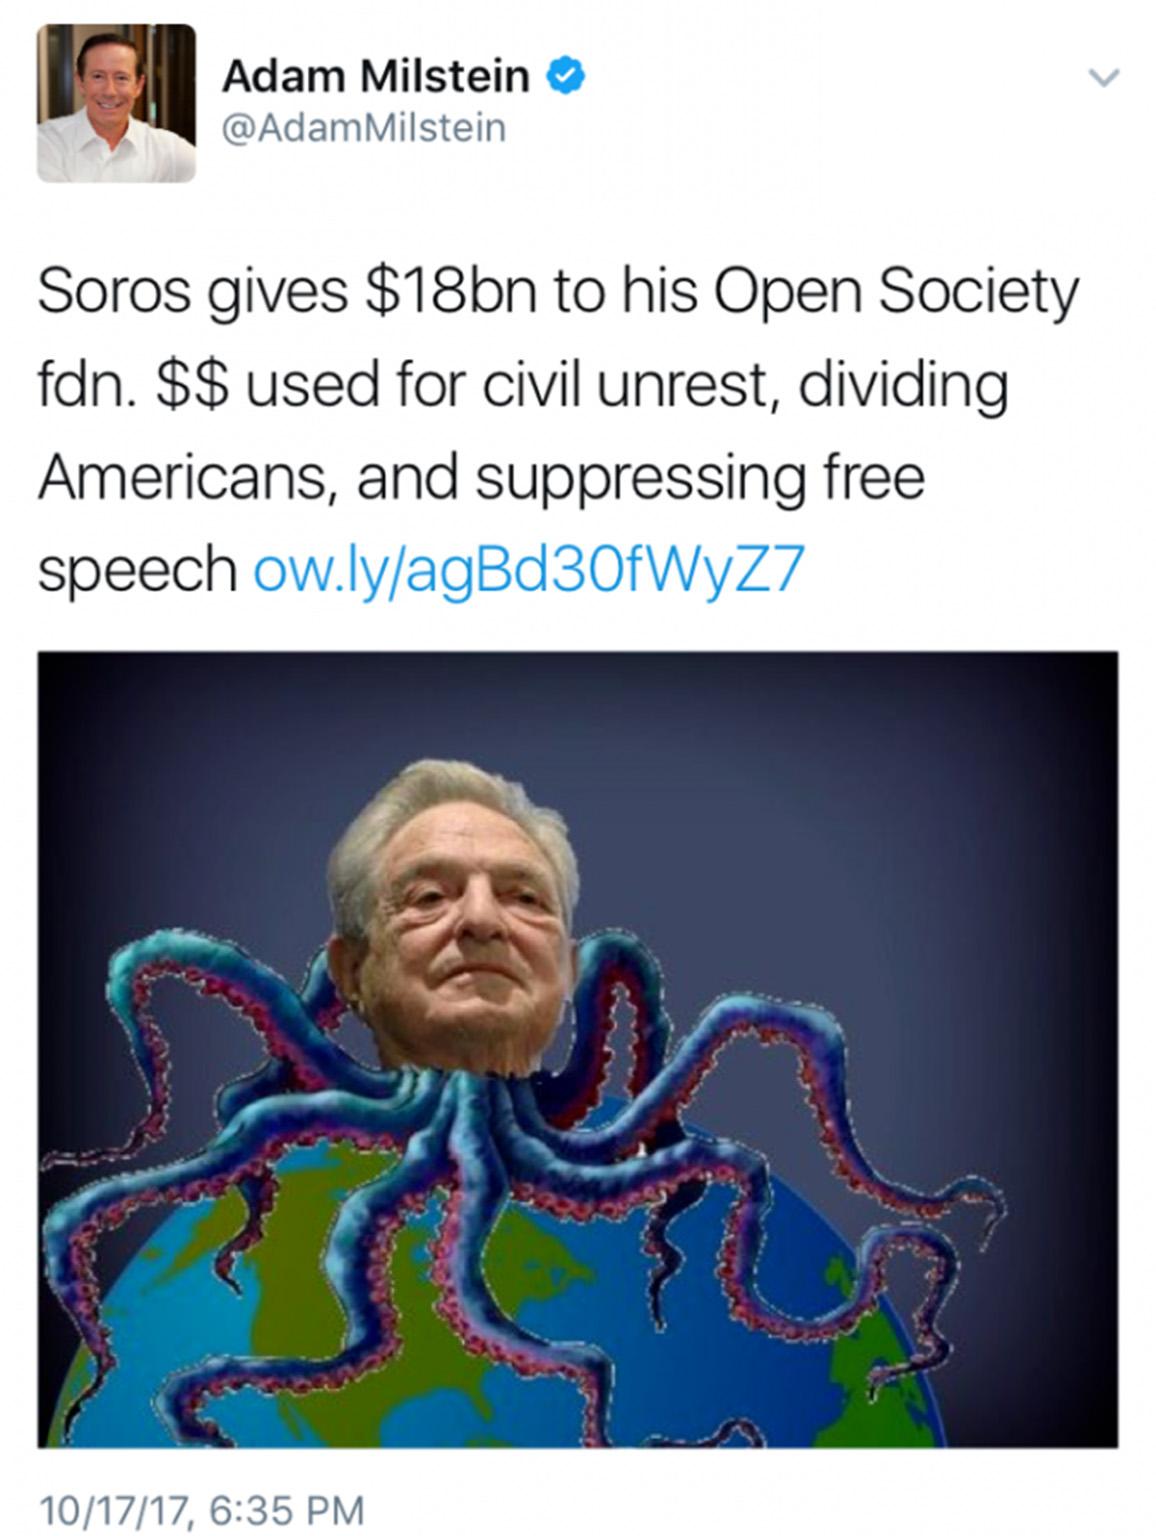 Adam Milstein tweet about Soros